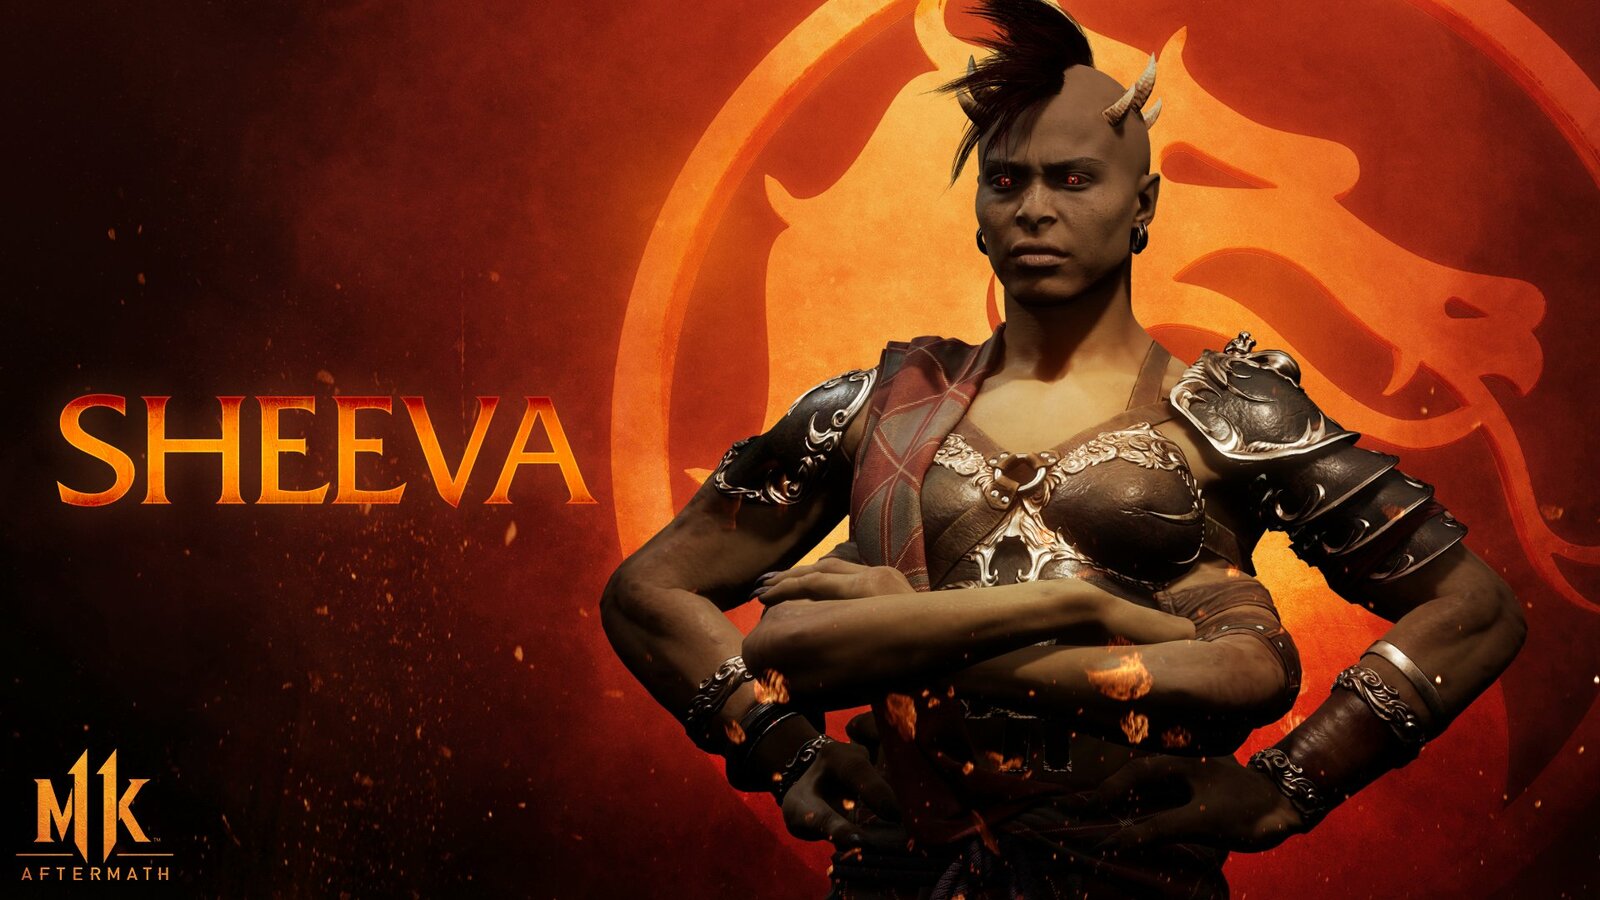 Mortal Kombat 11 - Sheeva